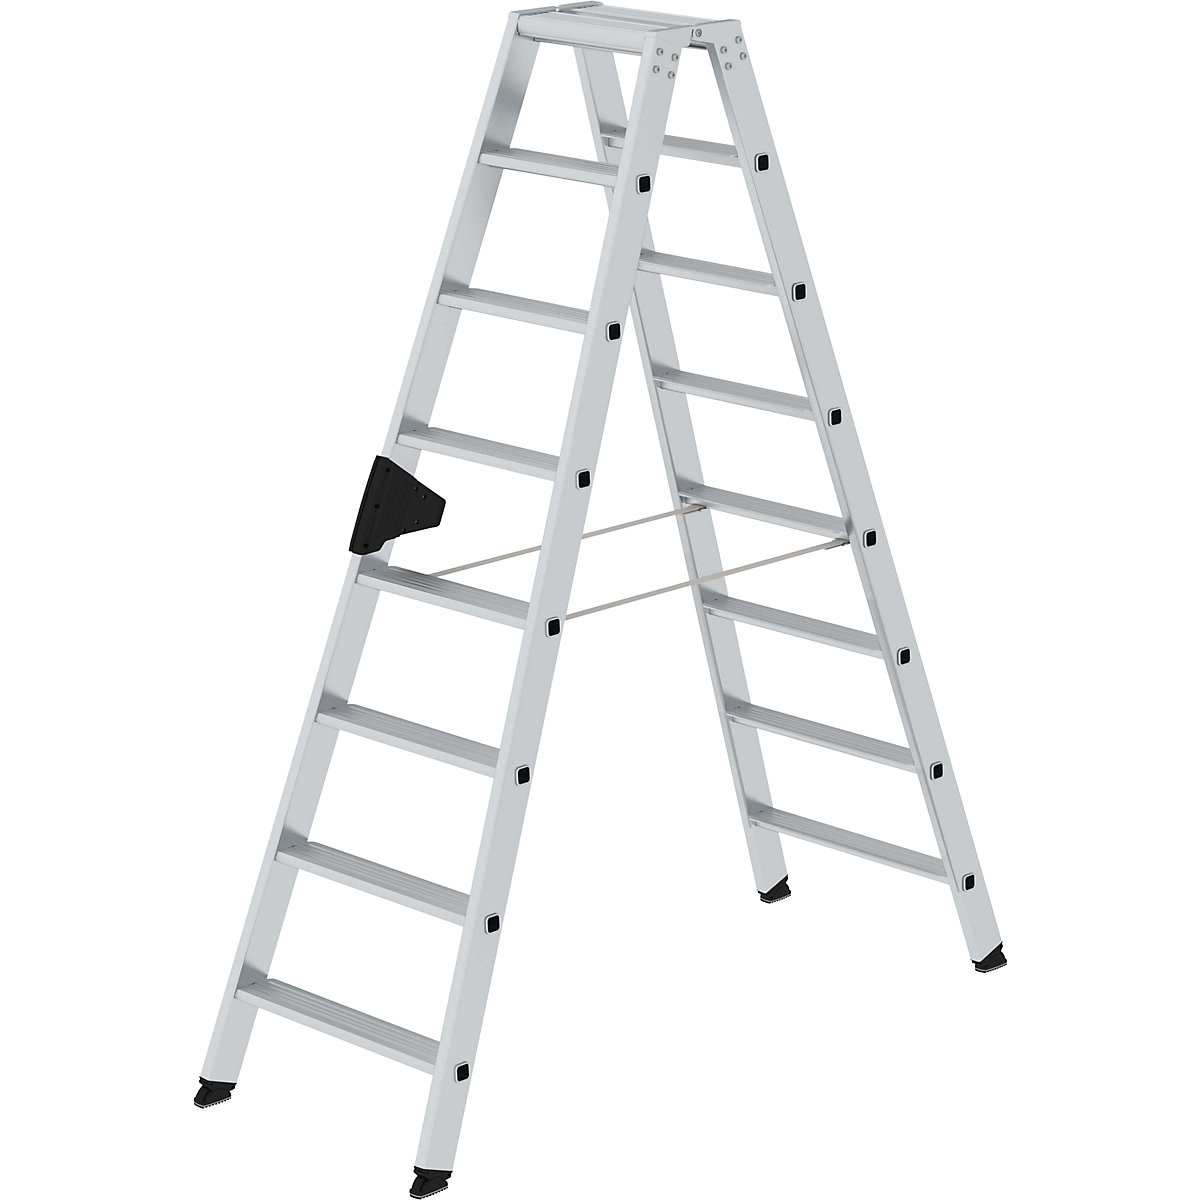 MUNK Stufen-Stehleiter, beidseitig, Komfort-Ausführung mit ergo-pad®, 2 x 8 Stufen